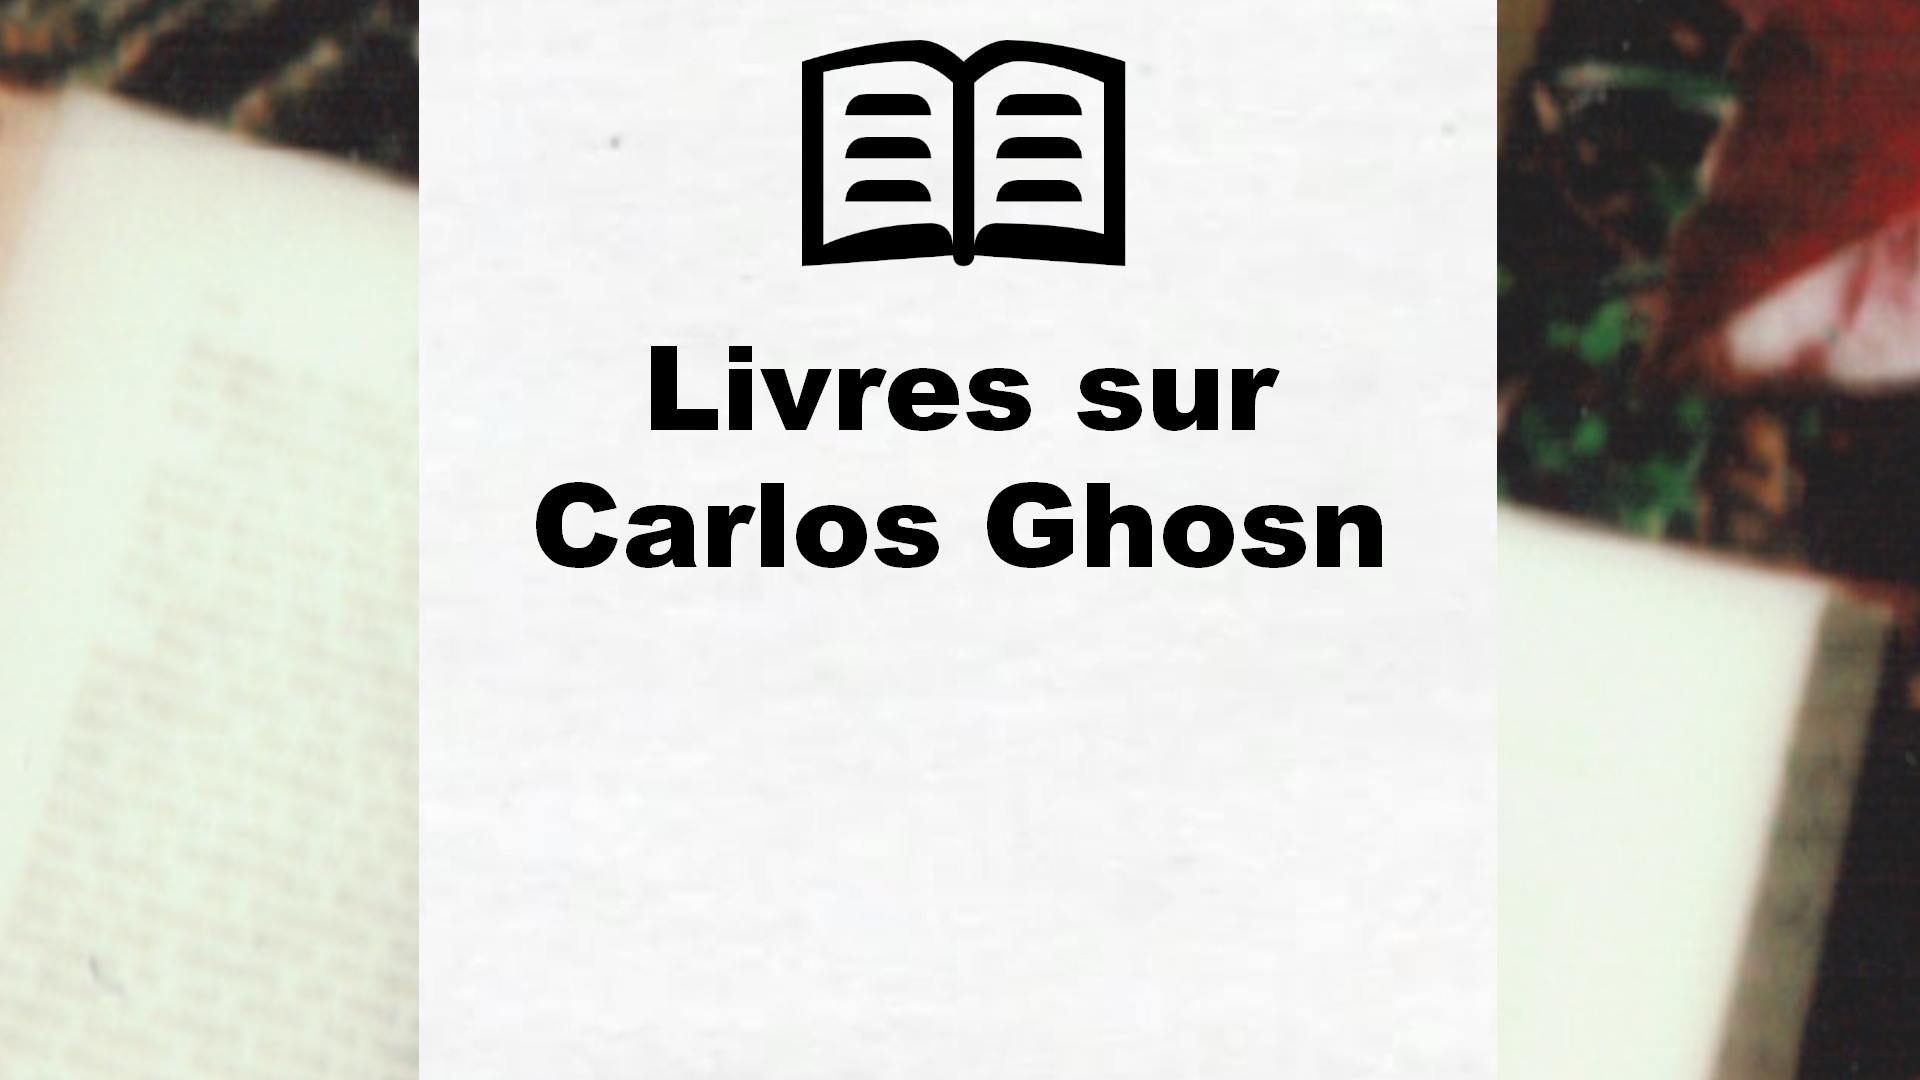 Livres sur Carlos Ghosn